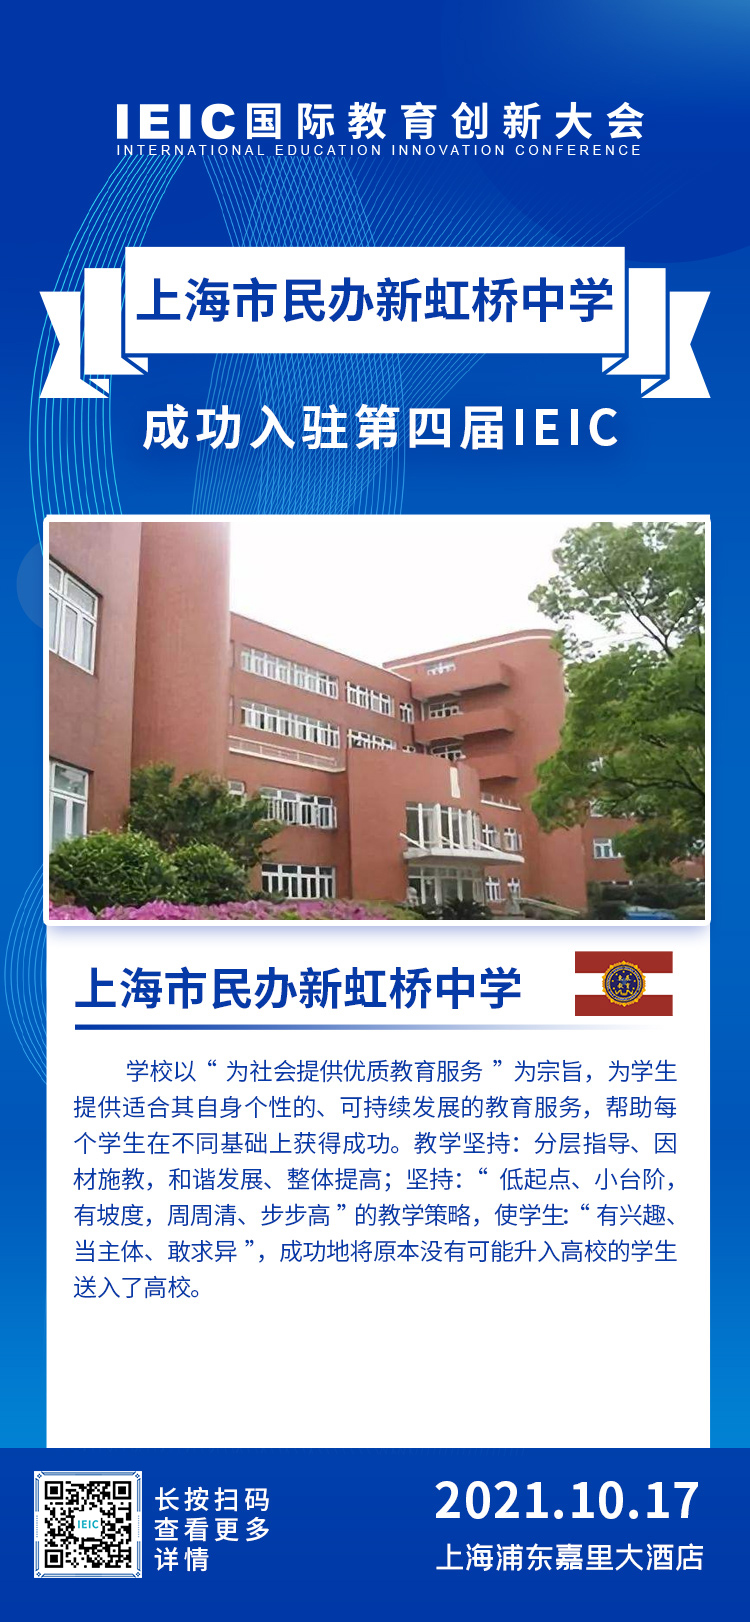 上海市民办新虹桥中学|入驻参展2021年远播第四届IEIC国际教育创新大会